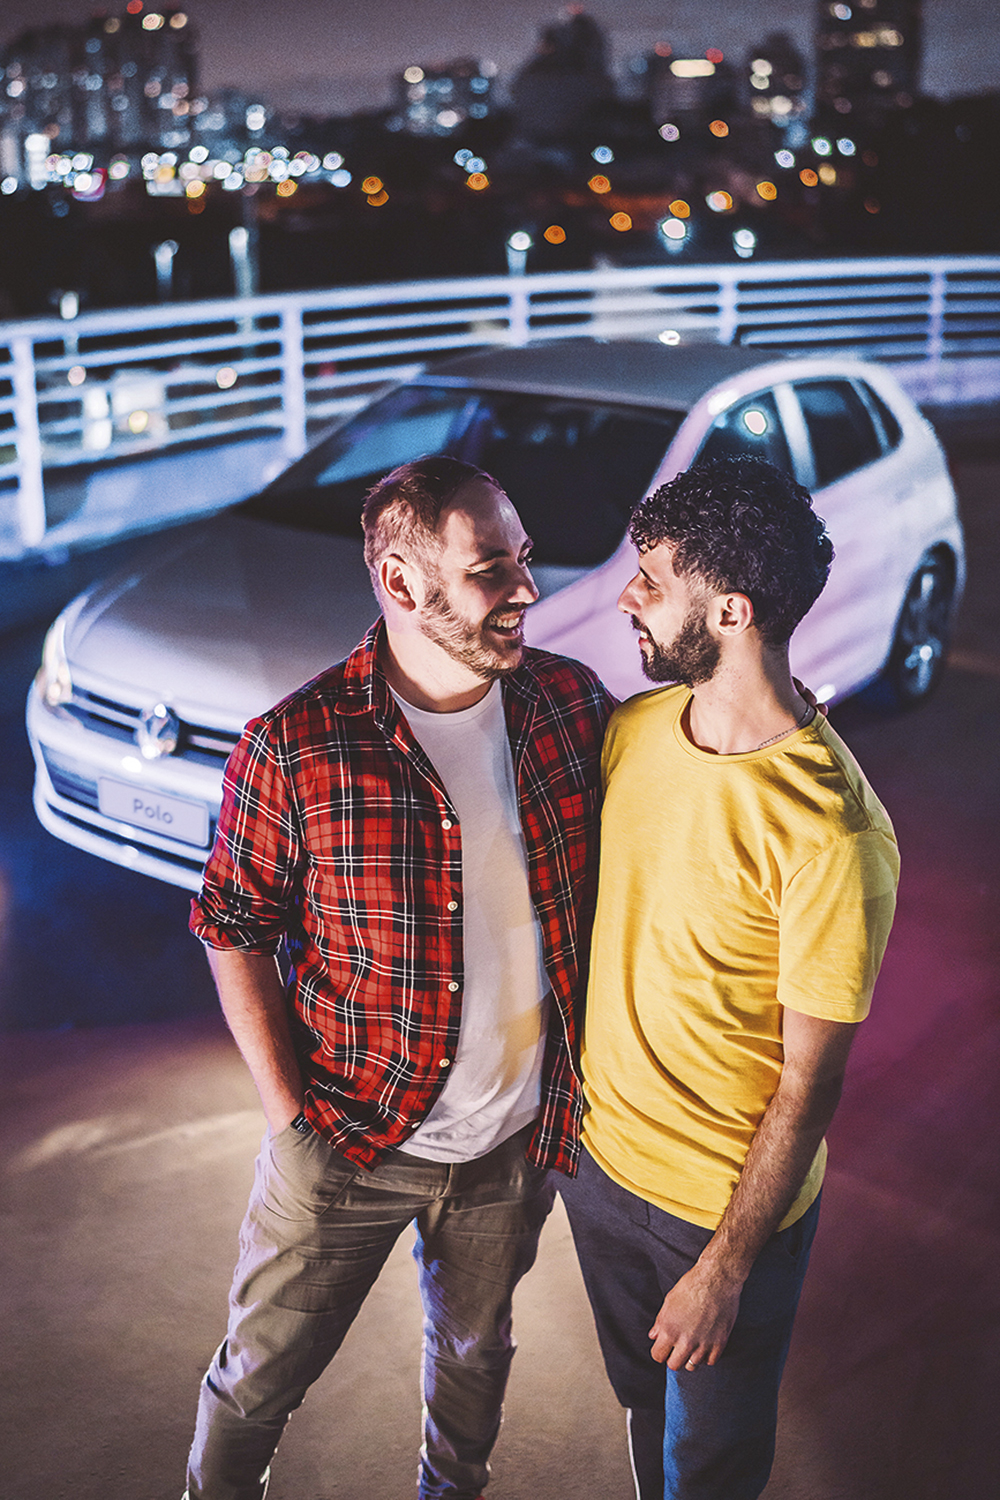 HOMOFOBIA NAS REDES SOCIAIS - Em 2022, a campanha do Novo Polo, da Volkswagen, exibiu um casal gay e ficou marcada por críticas à empresa nas plataformas digitais